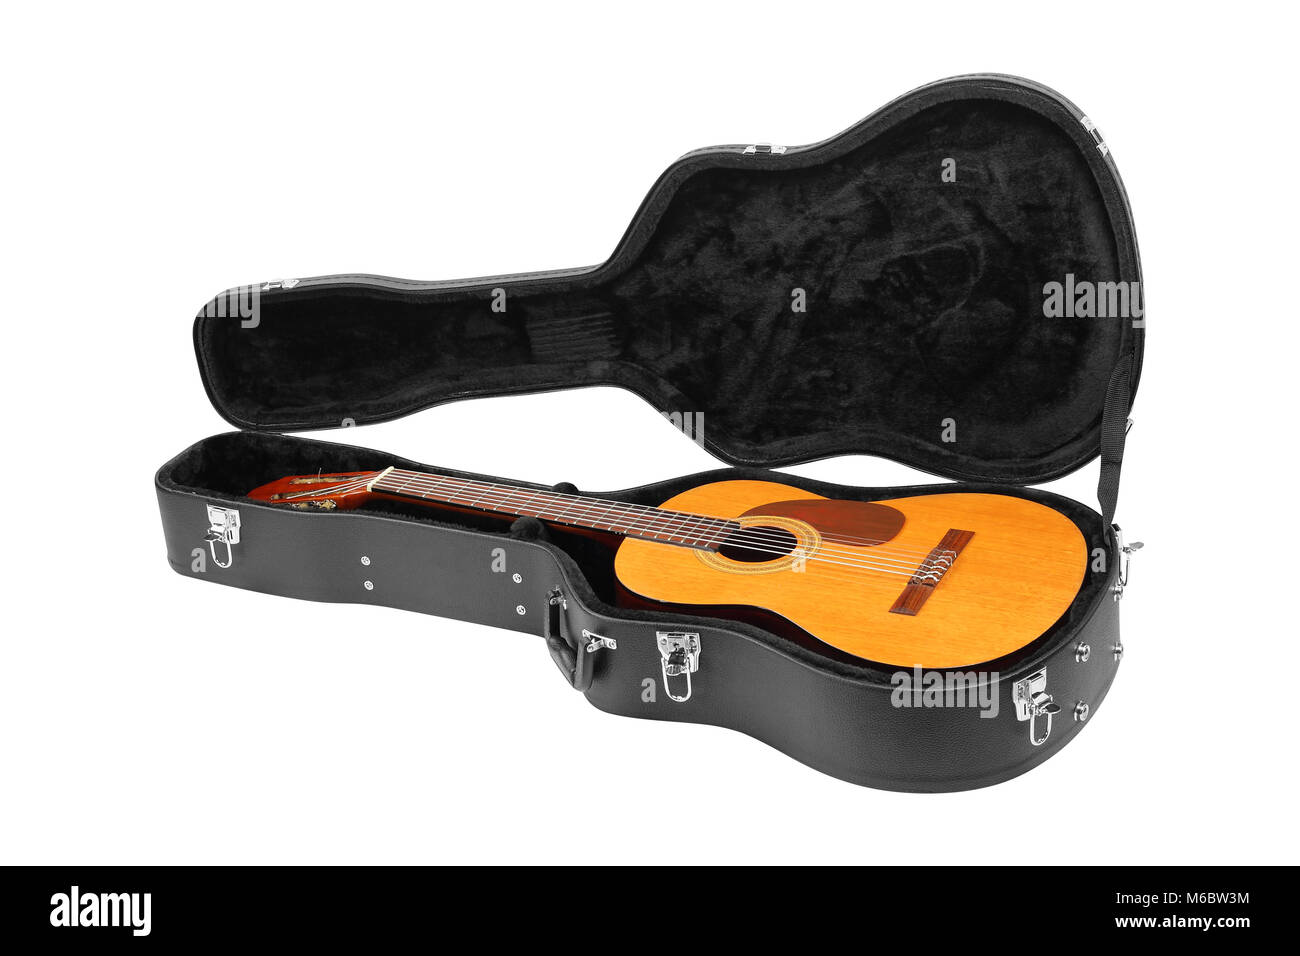 Musikinstrument - Klassische Gitarre Koffer auf einem weißen Hintergrund  Stockfotografie - Alamy